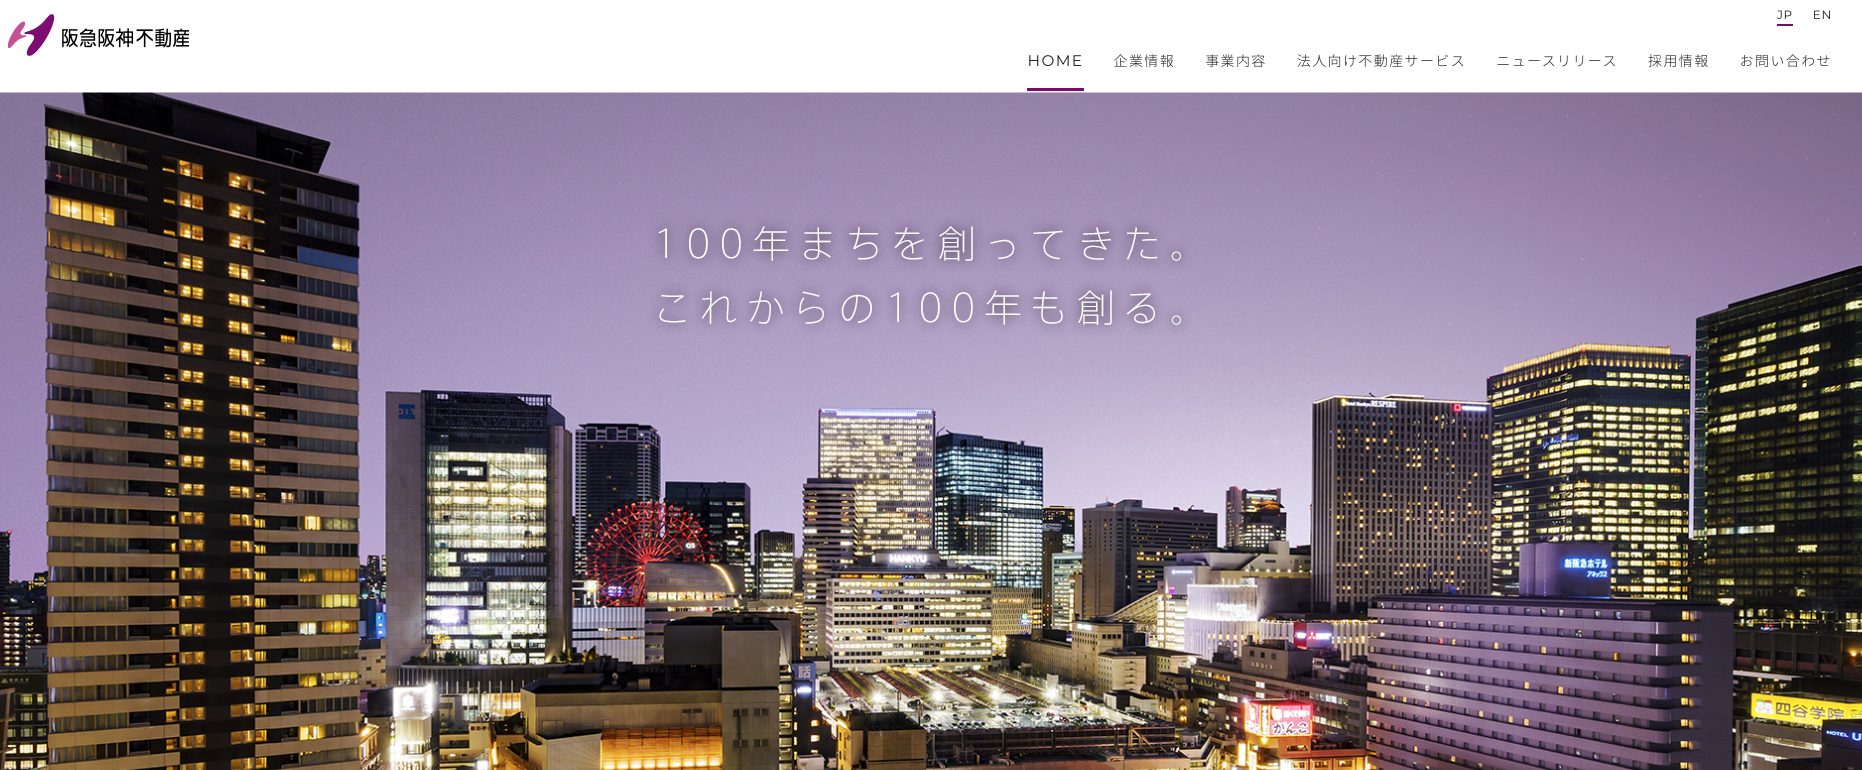 阪急阪神不動産のホームページ